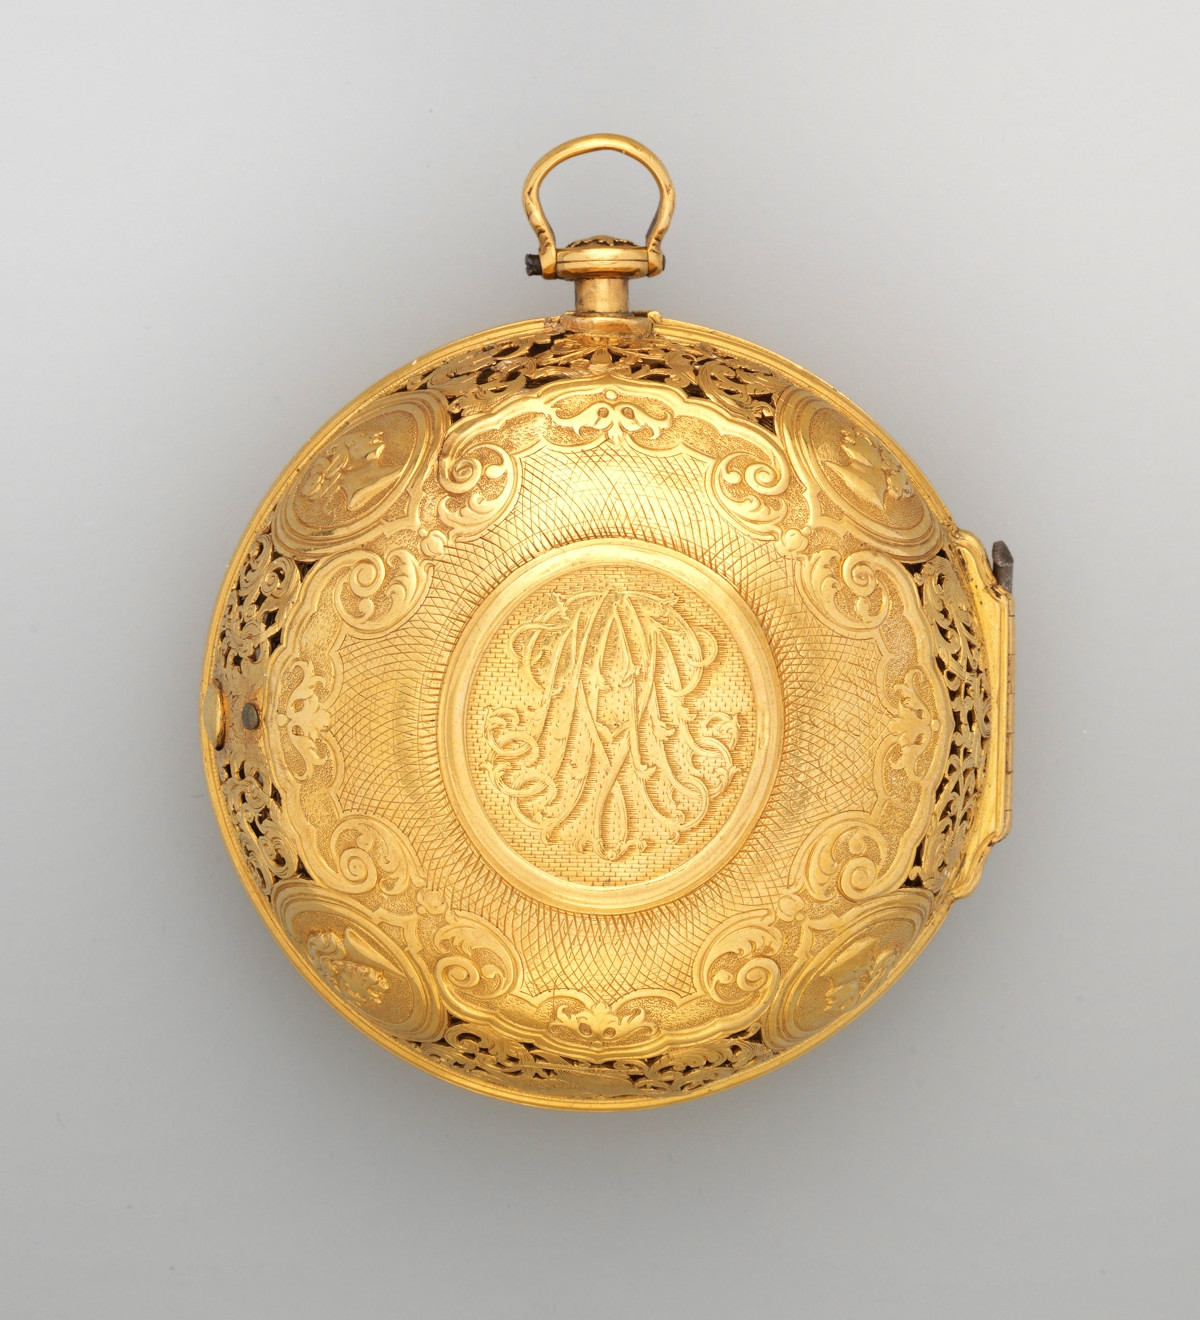 1720. Watch. British, London. Gold, enamel. metmuseum